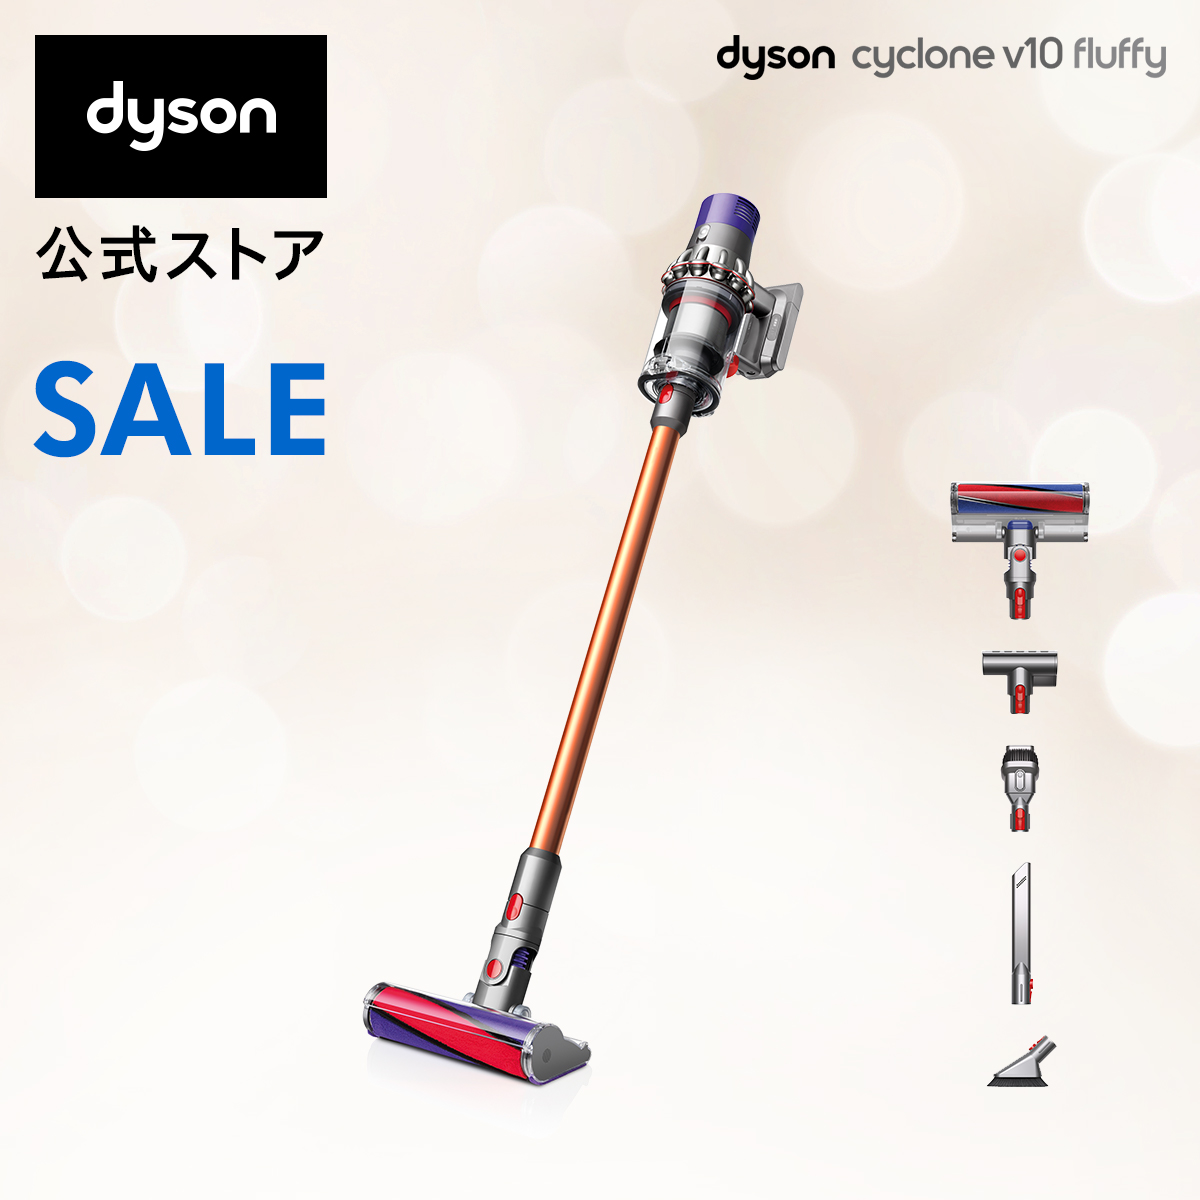 【楽天市場】【直販限定カラー｜軽量モデル】ダイソン Dyson V8